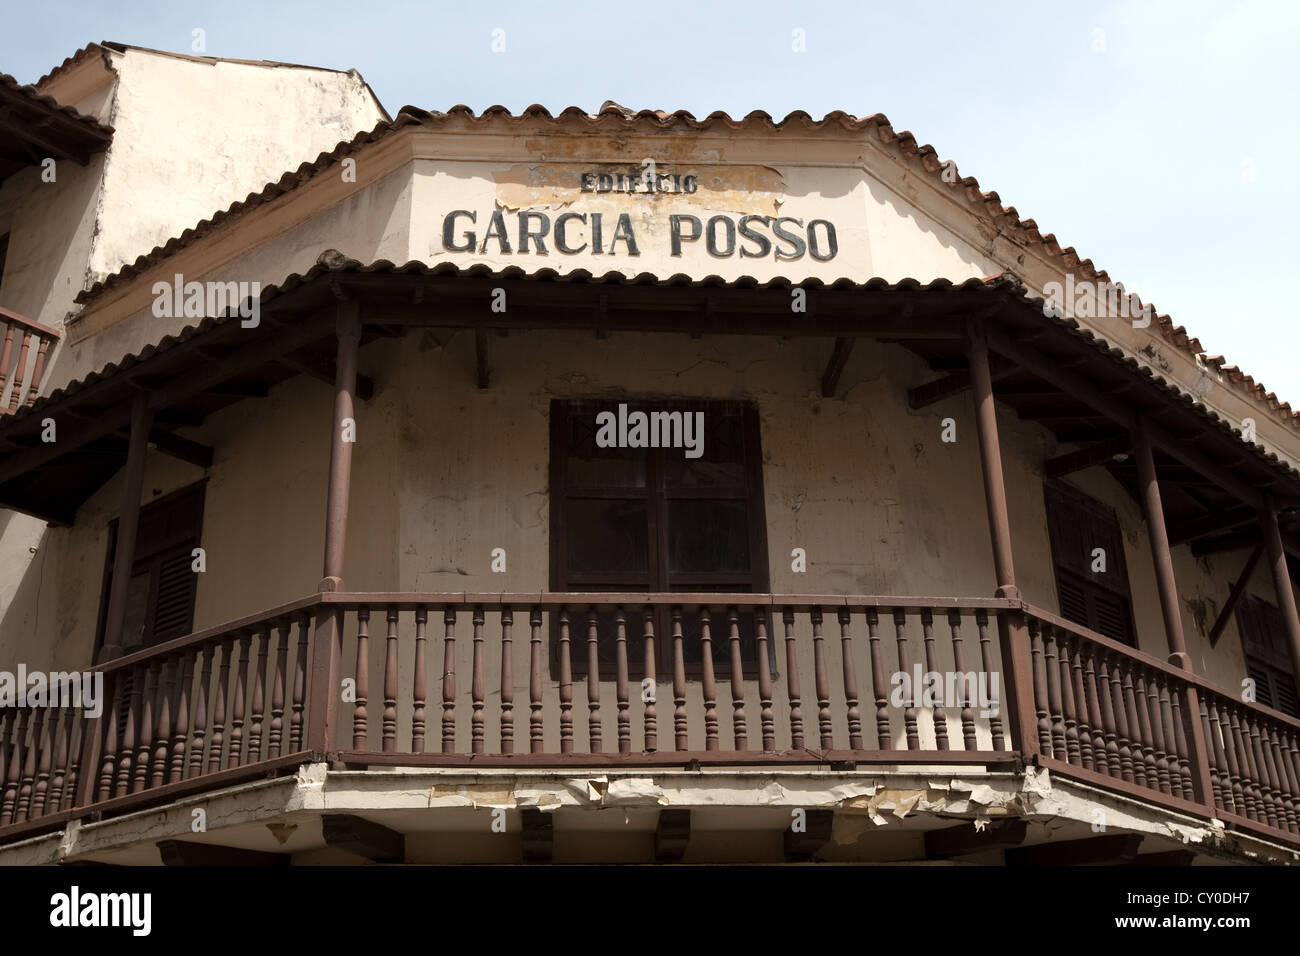 Garcia Posso building corner, Calle del Coliseo, Barrio San Diego, old walled city, Ciudad Amurallada, Cartagena de Indias, Colombia Stock Photo